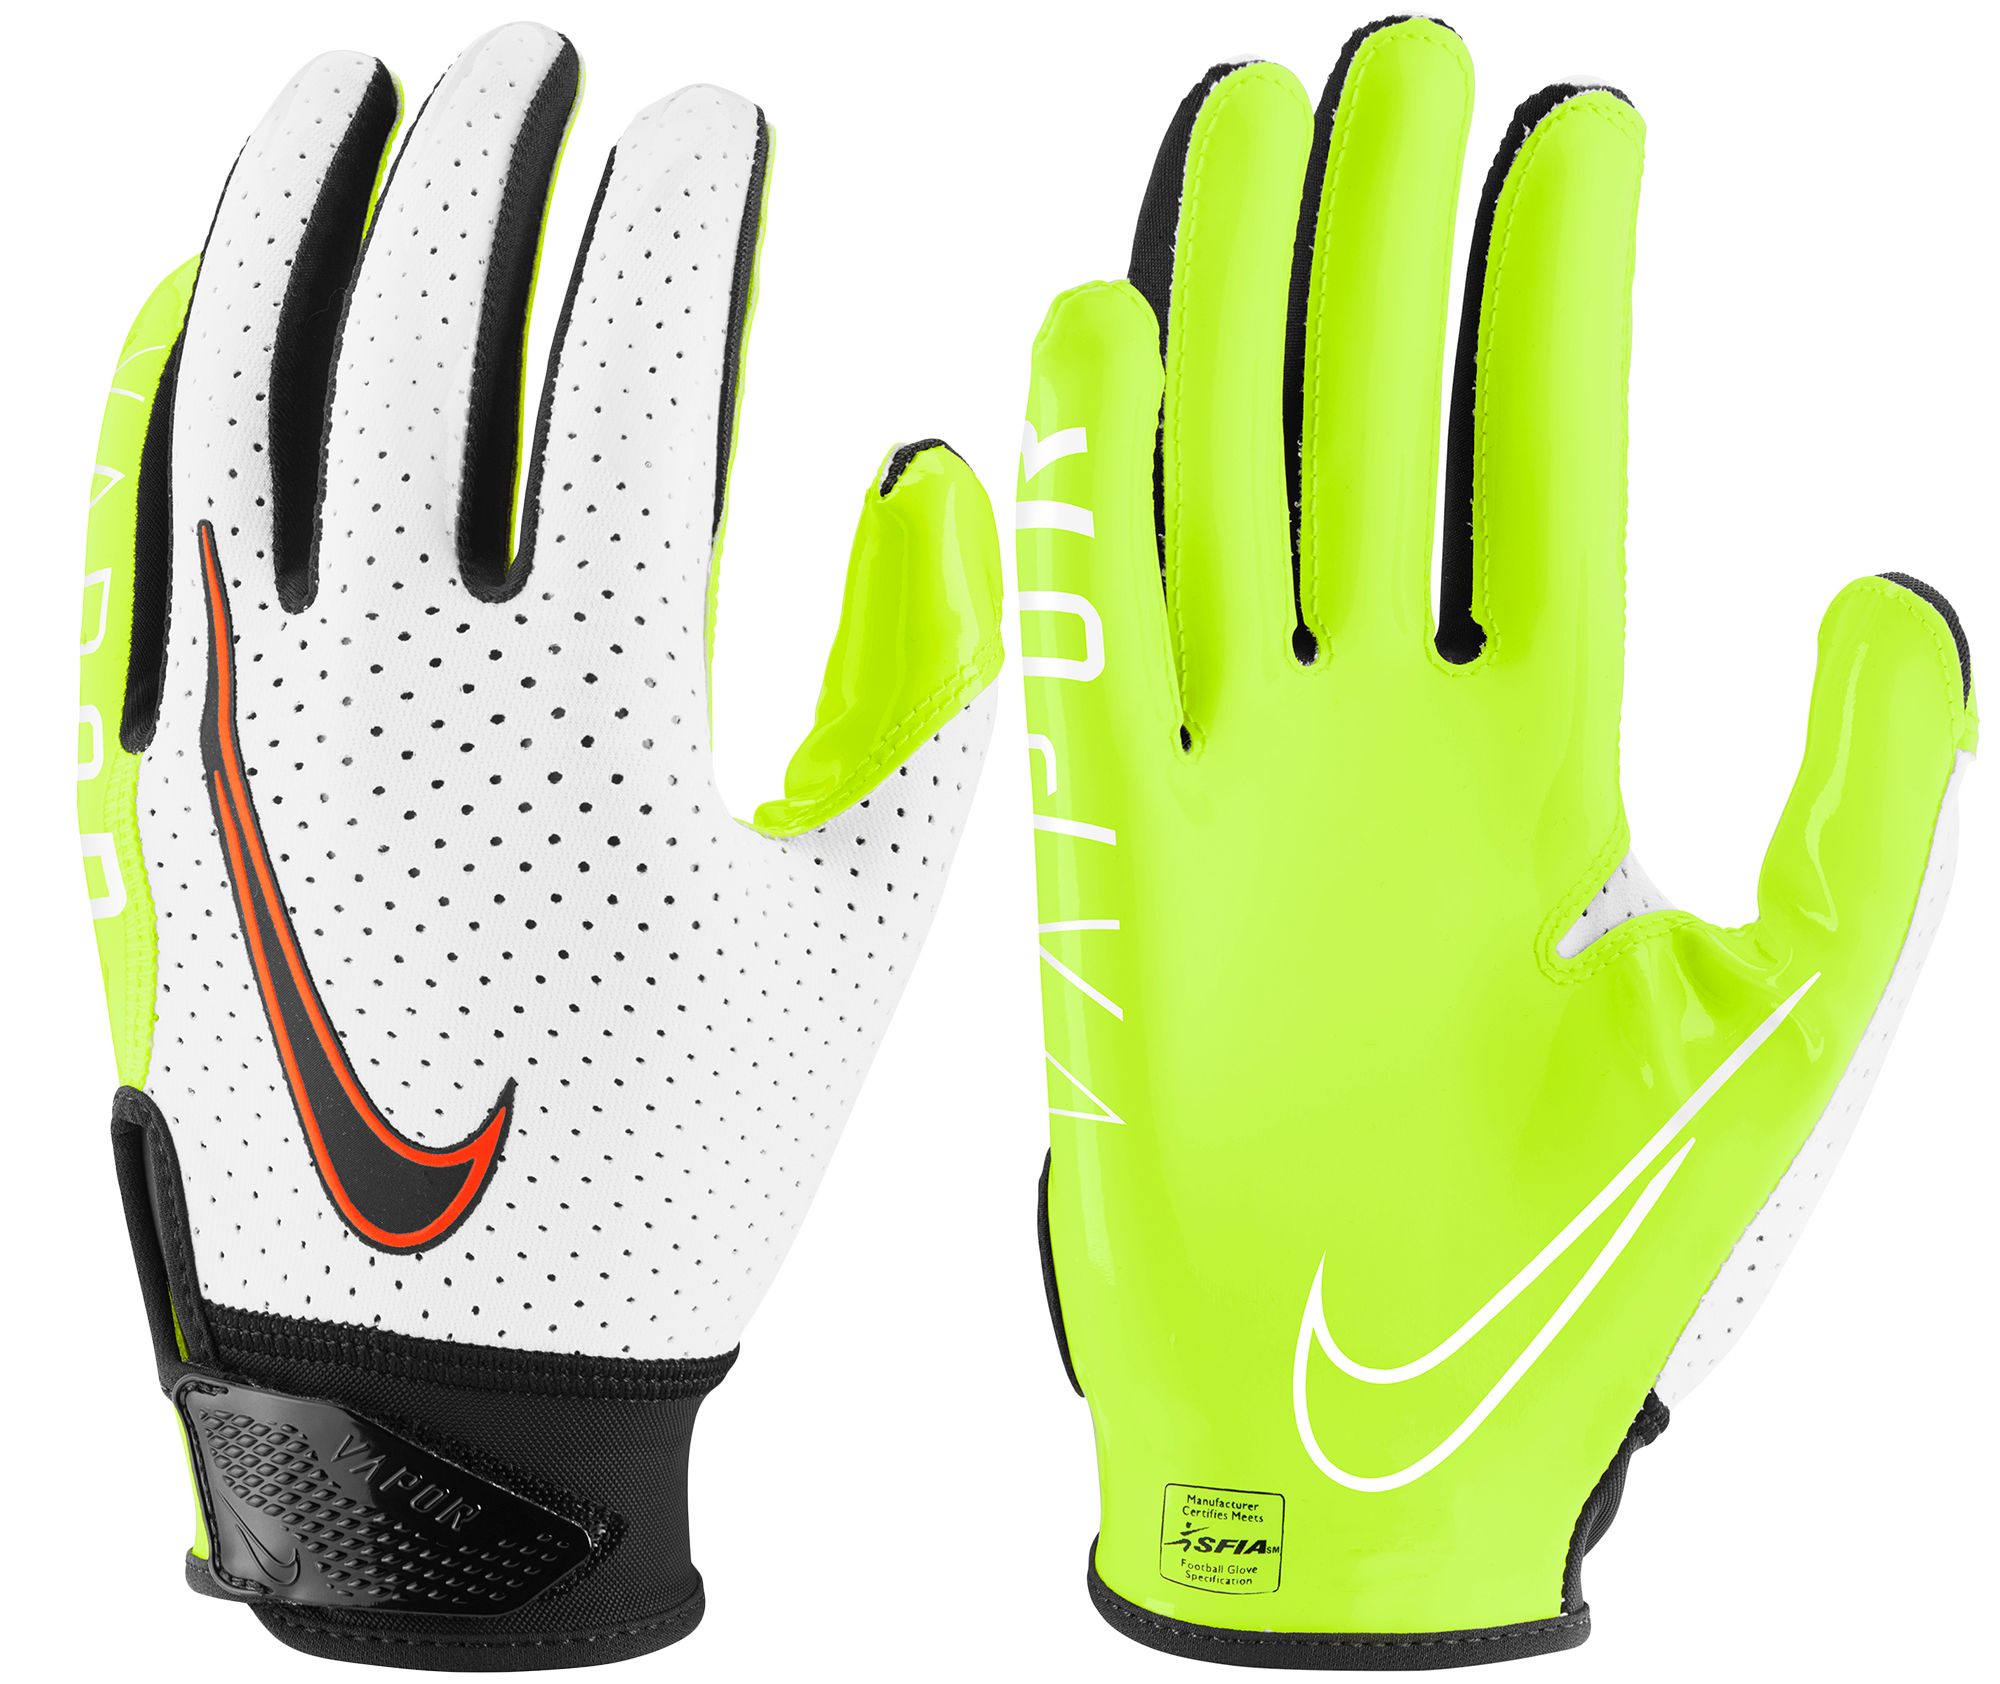 Nike Vapor Jet 6.0 Football Gloves